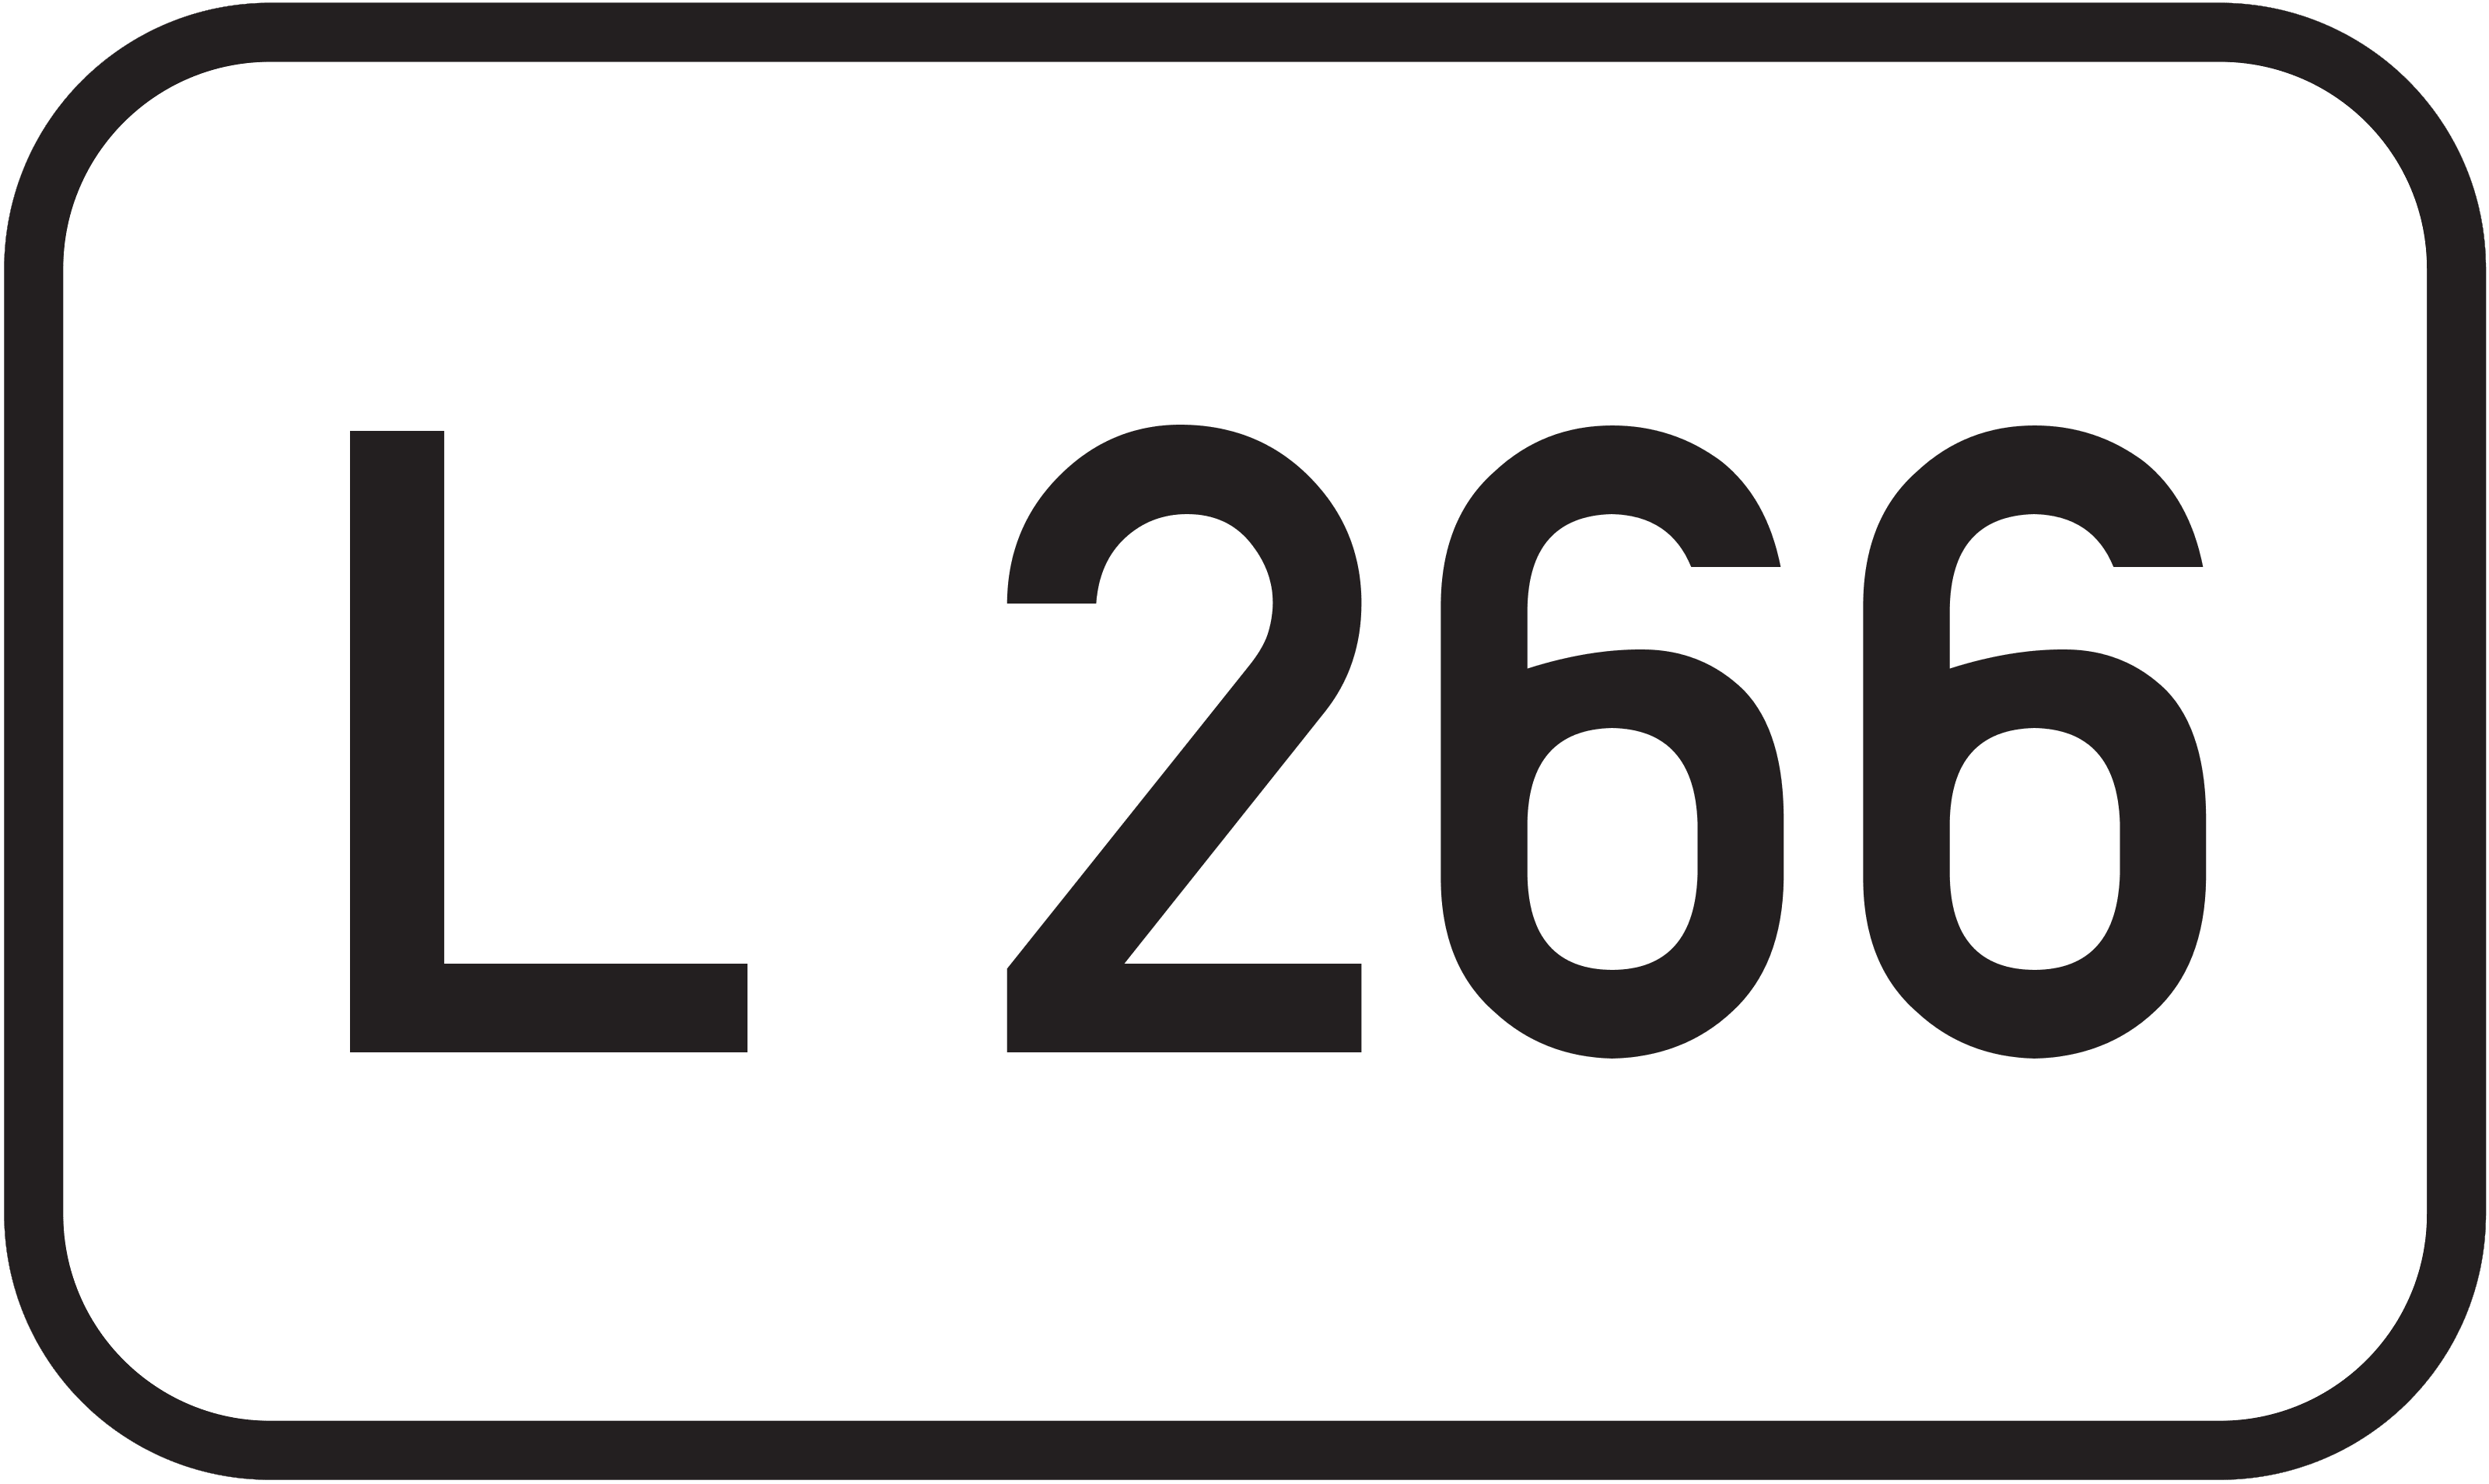 Landesstraße L 266